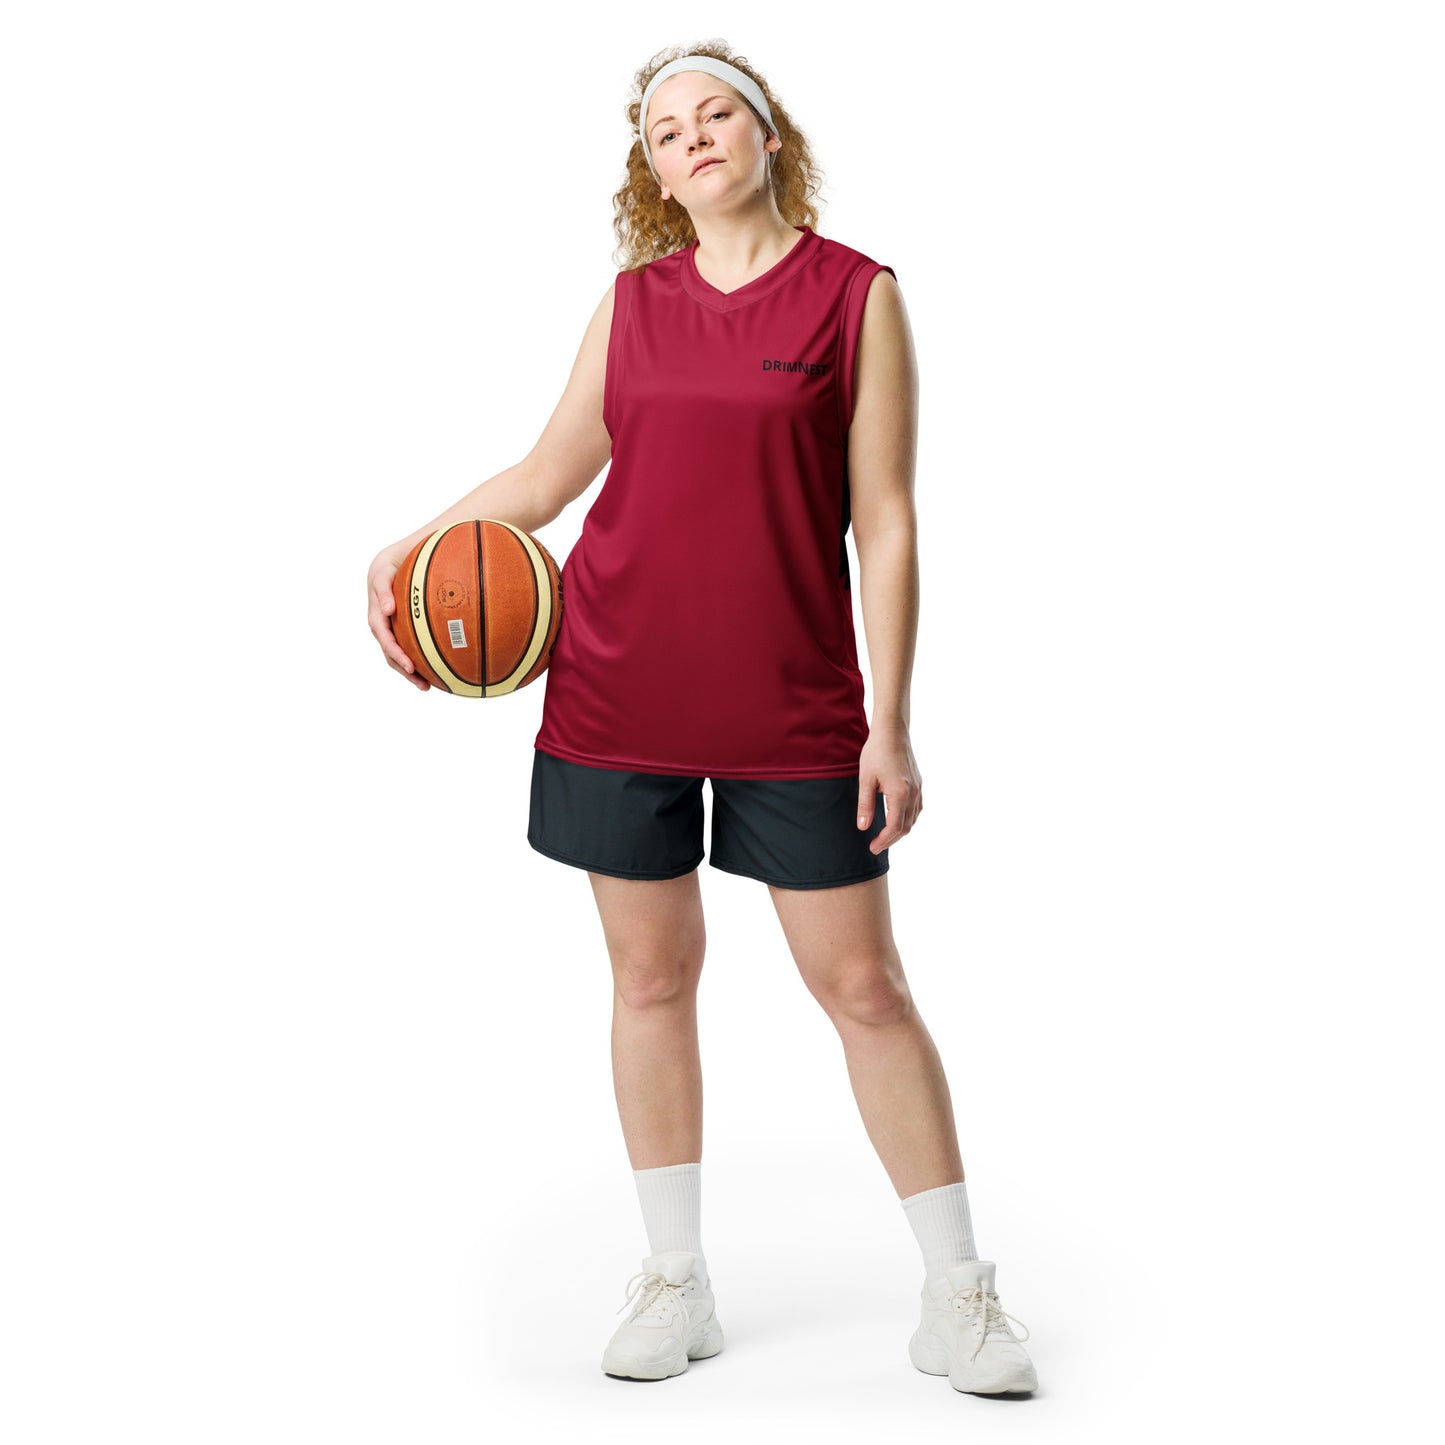 BE FREE - unisex basketball jersey